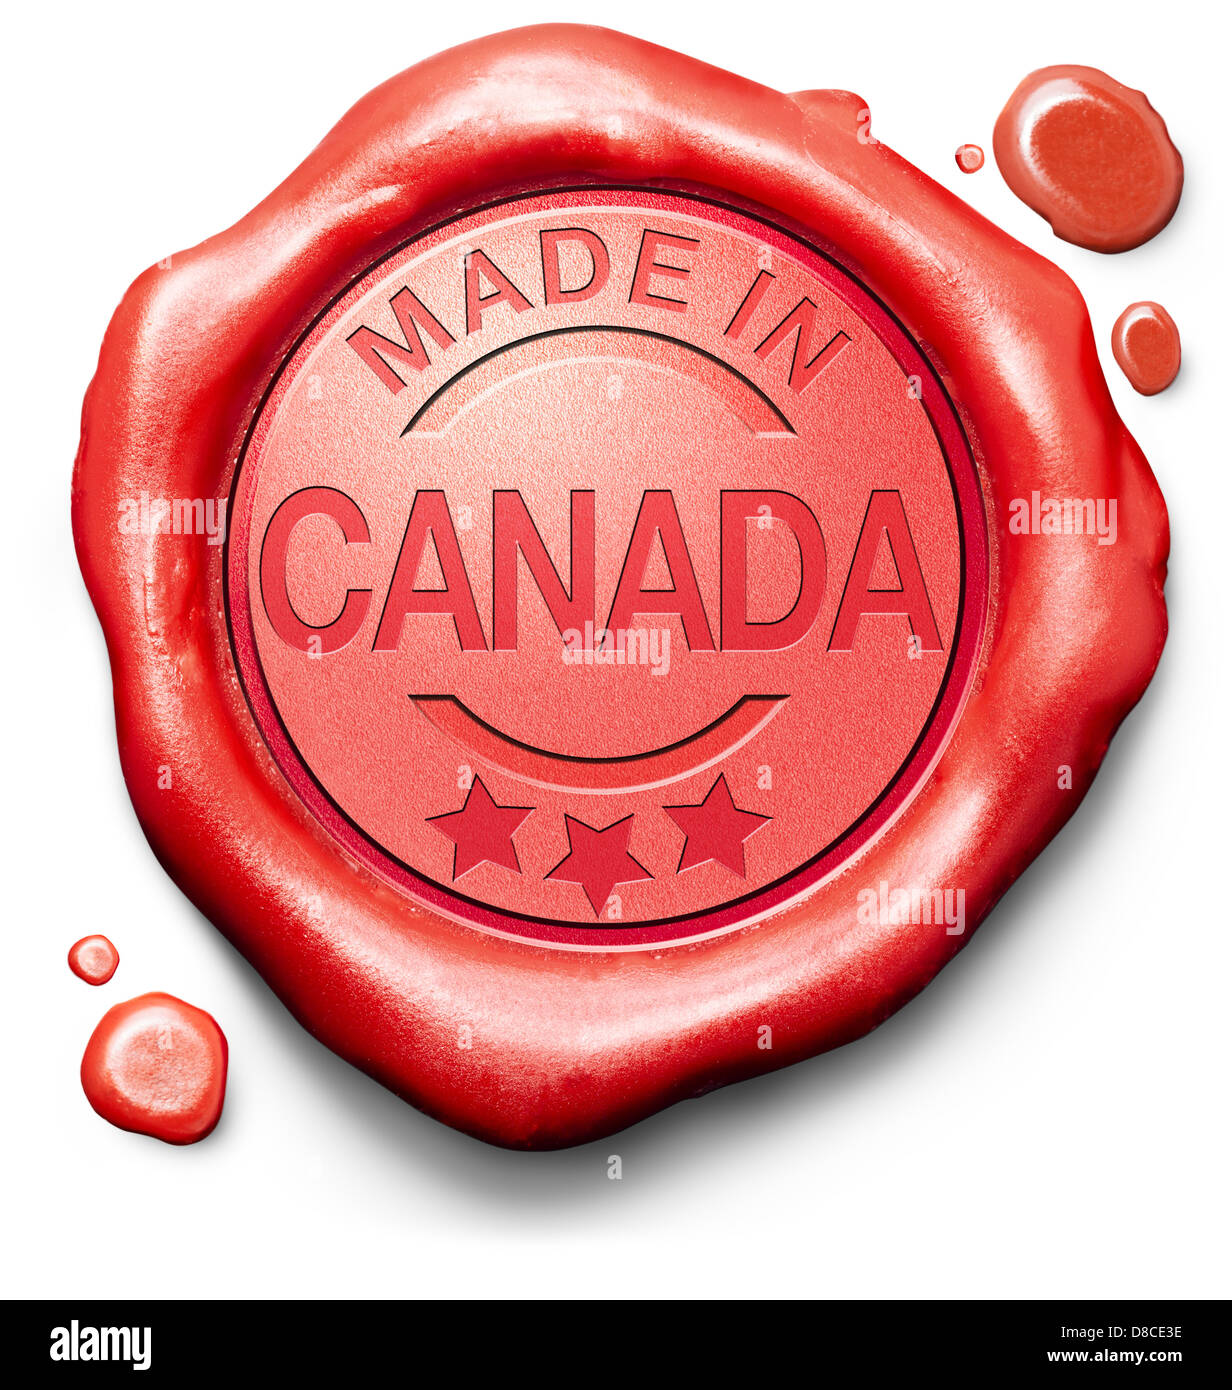 Realizzato in Canada prodotto originale comprare locale acquista autentico canadese etichetta di qualità di cera rossa guarnizione timbro Foto Stock